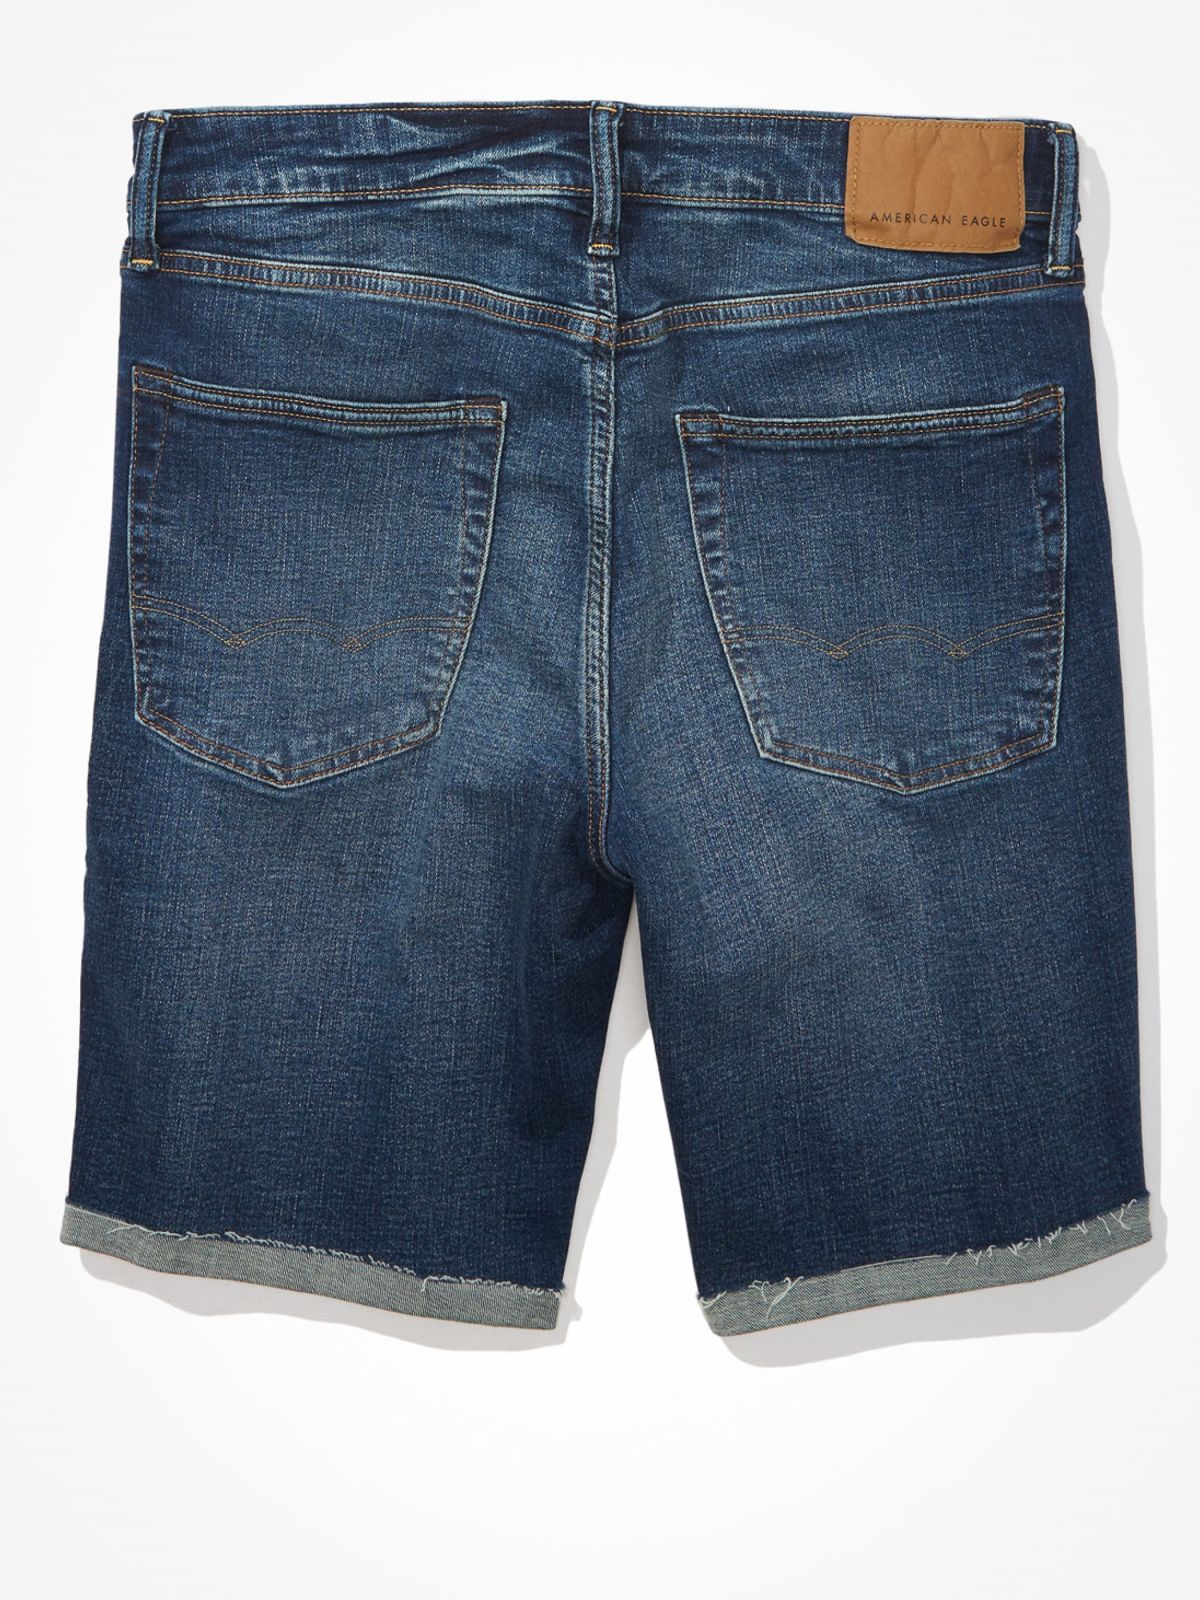  ג'ינס קצר בשטיפה כהה בגזרת Athletic / גברים  של AMERICAN EAGLE